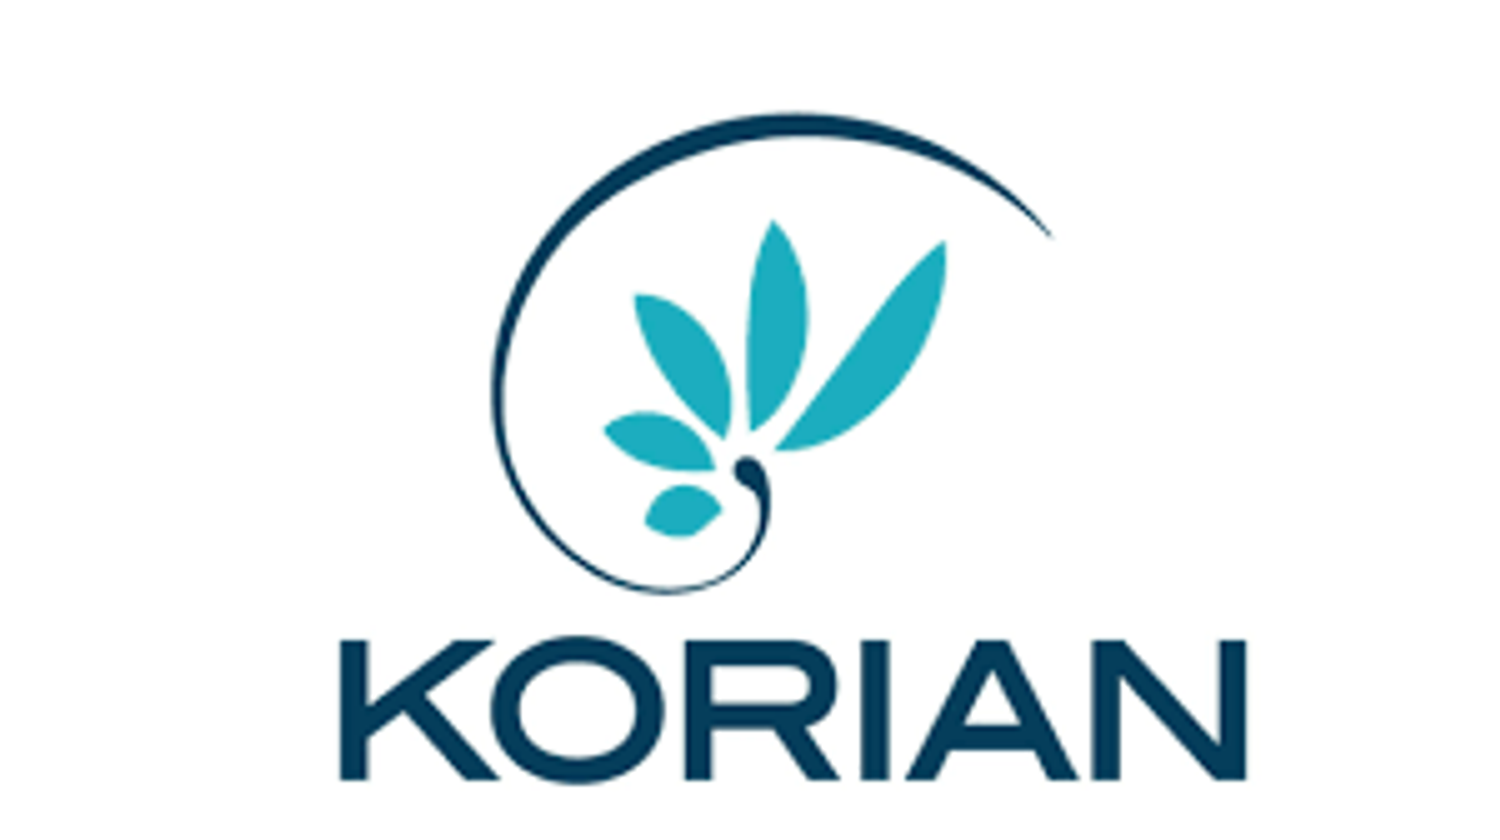 9/06/22 : Le groupe de maisons de retraite Korian visé par 30 nouvelles plaintes